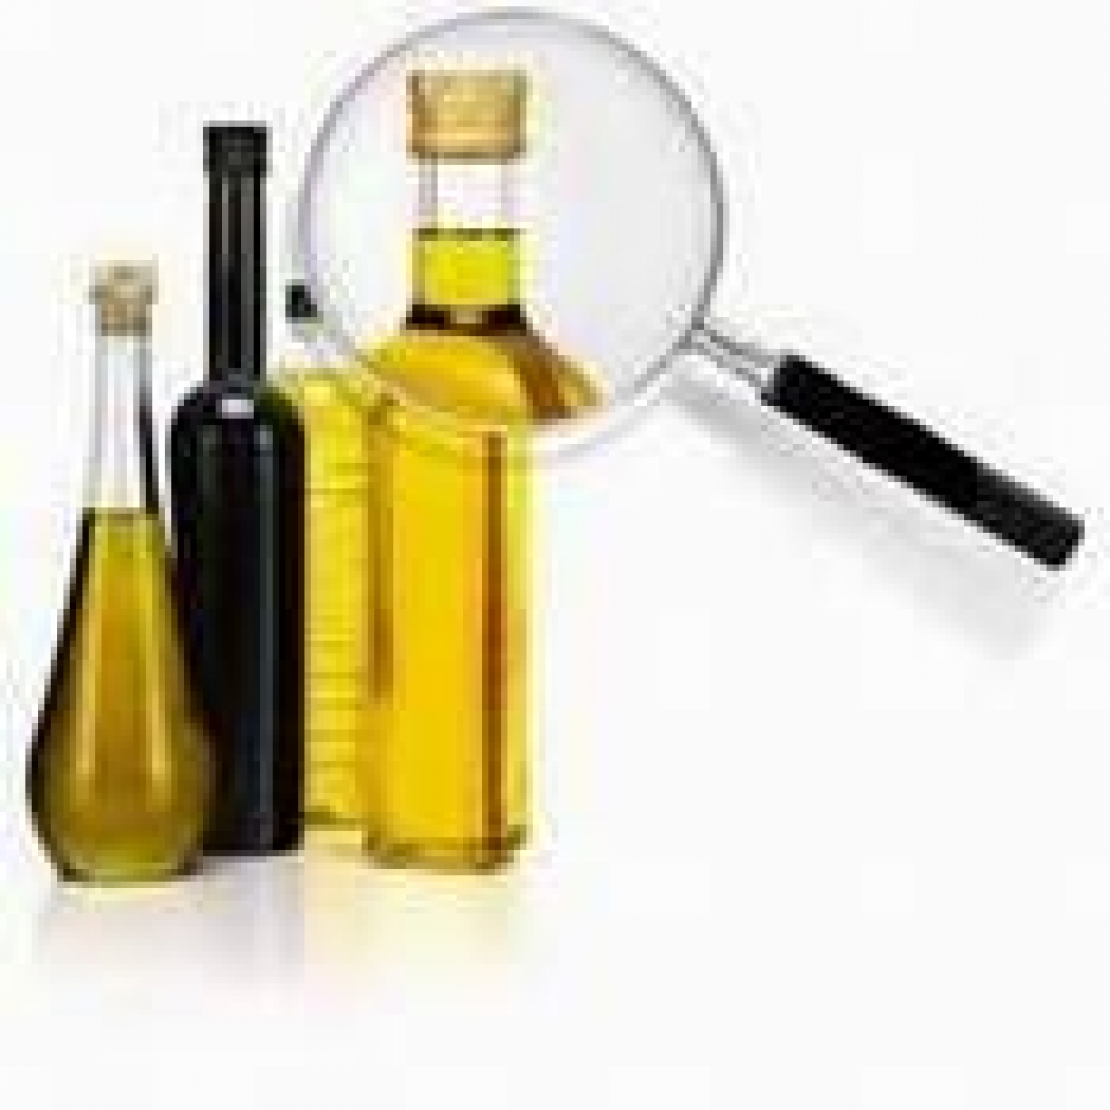 Dove e come “appare” l'olio extra vergine d'oliva in Italia? Dove si nascondono truffe e inganni?